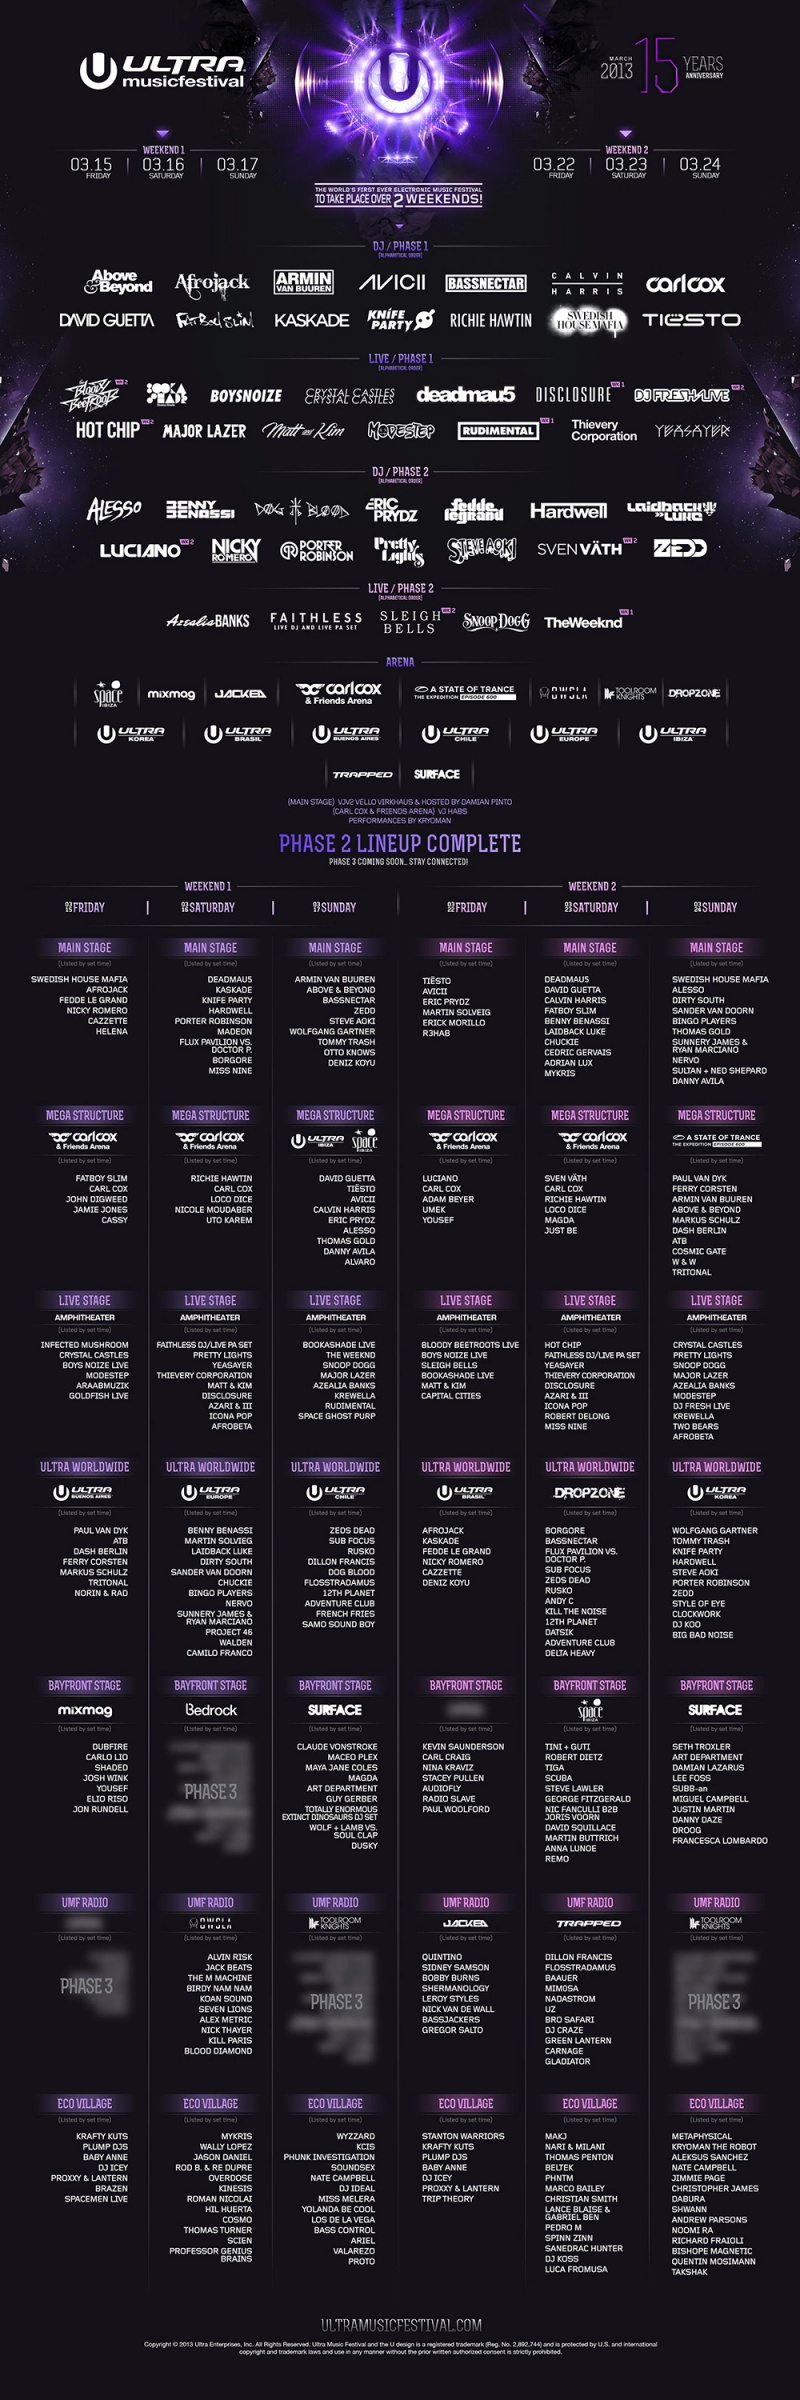 ultra 2013 kadrosu 2. aşama Ultra Müzik Festivali 2013 ikinci aşama dizisini ortaya koyuyor: The Weeknd, Sleigh Bells, Skrillex